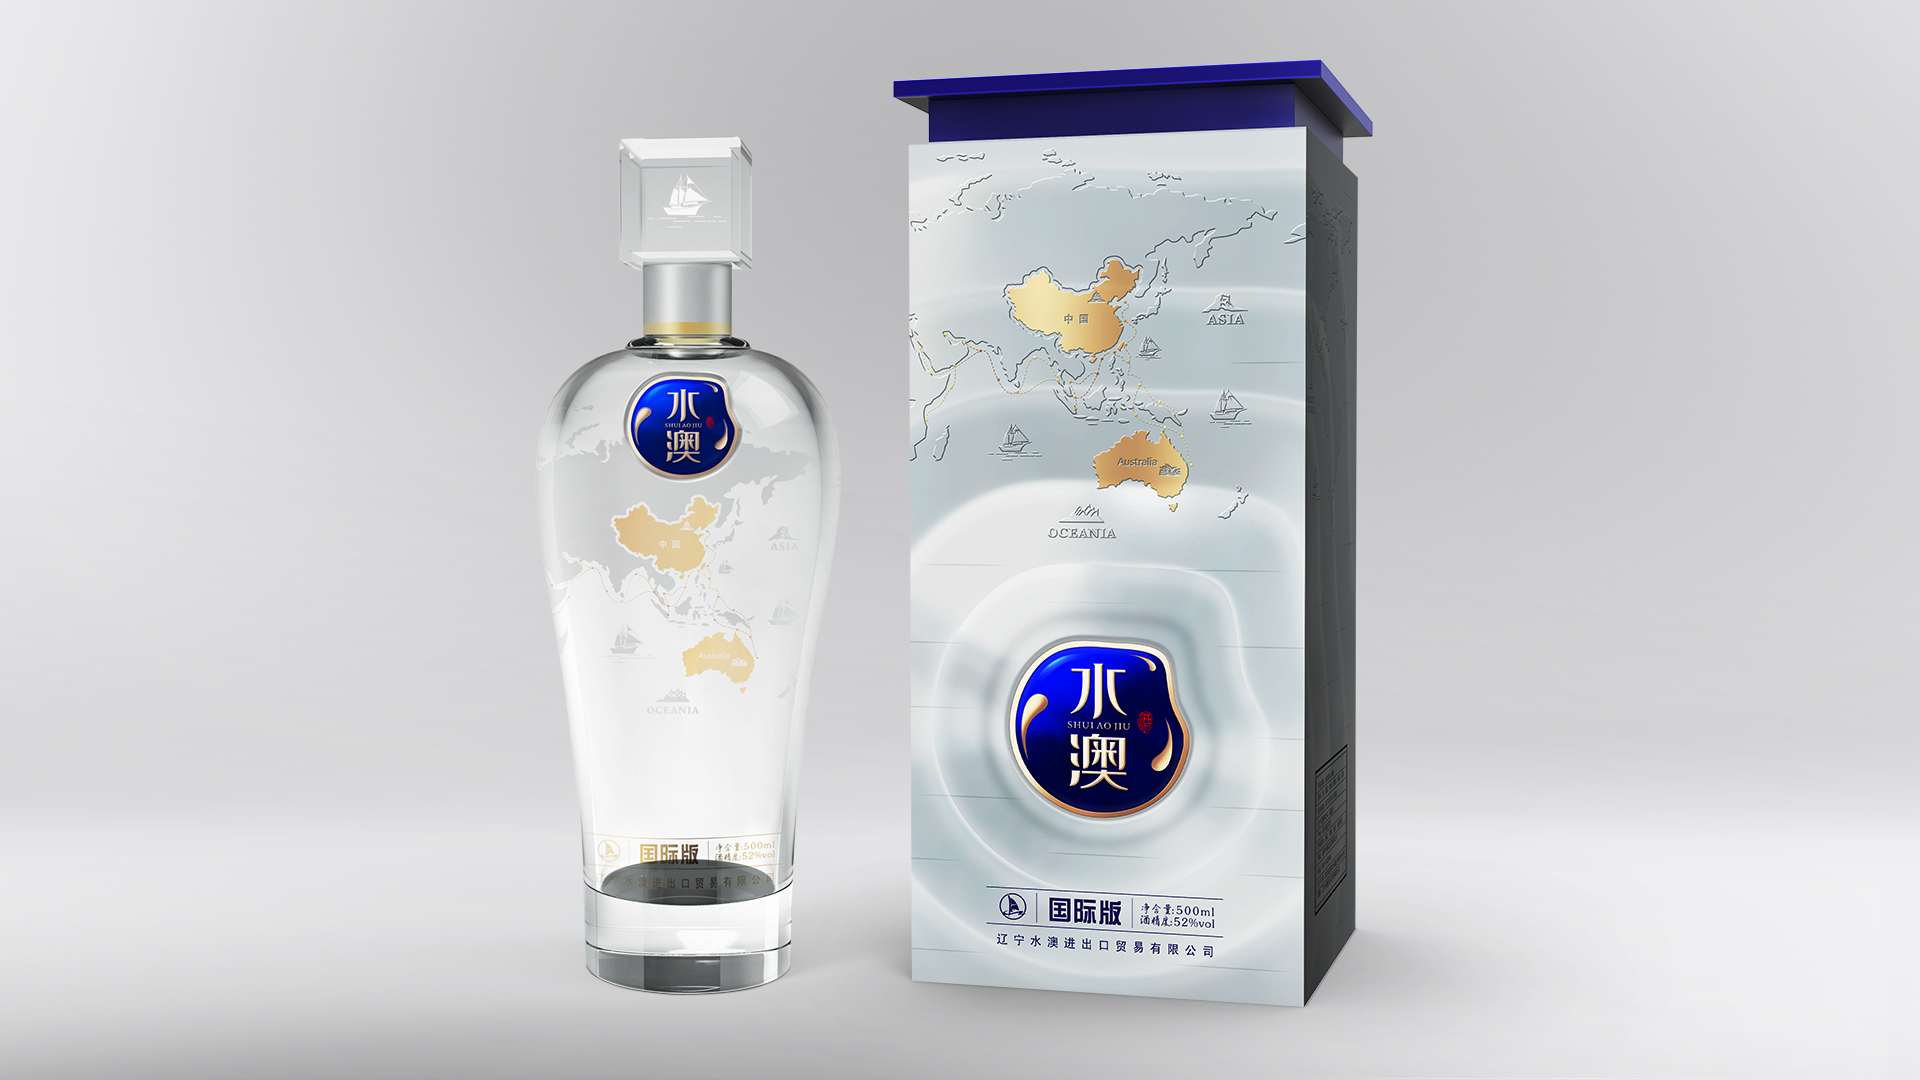 水澳酒国际版-川派浓香-原创白酒包装设计